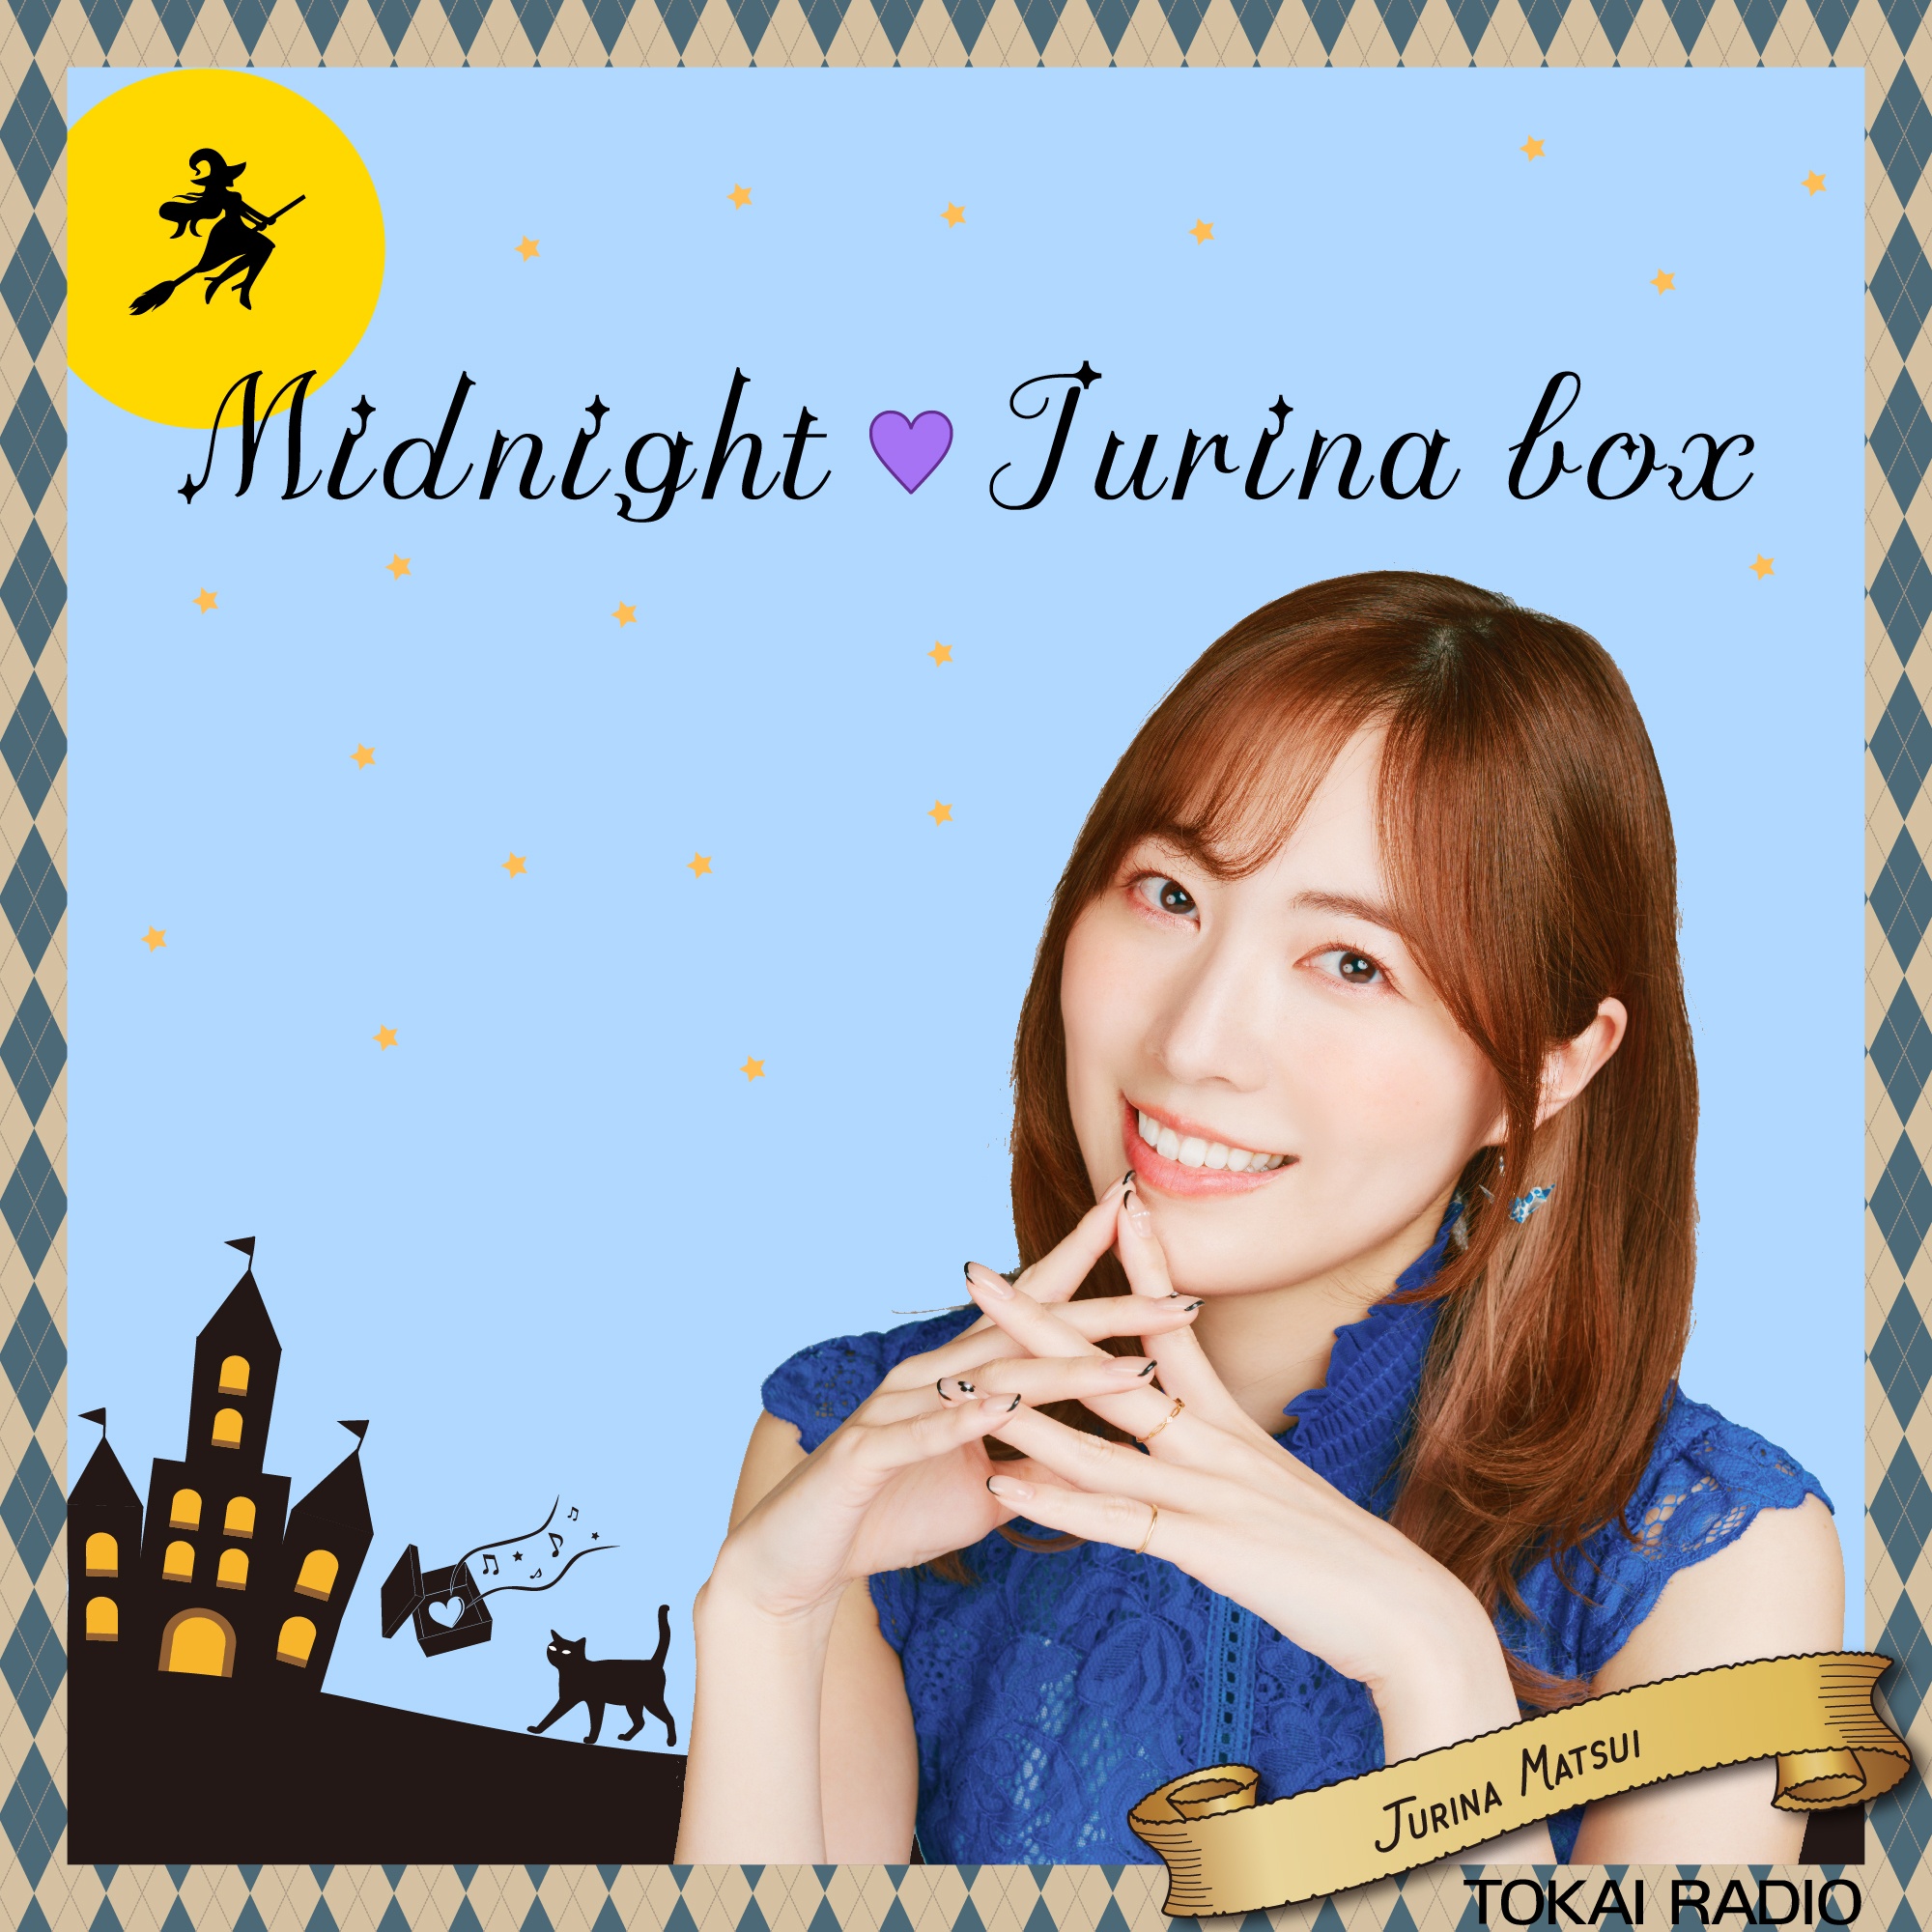 毎週月曜日26:00〜26:30松井珠理奈がDJを務める30分のミュージックプログラム。「Midnight♡Jurina box」がPodcastでもお聴き頂けます。